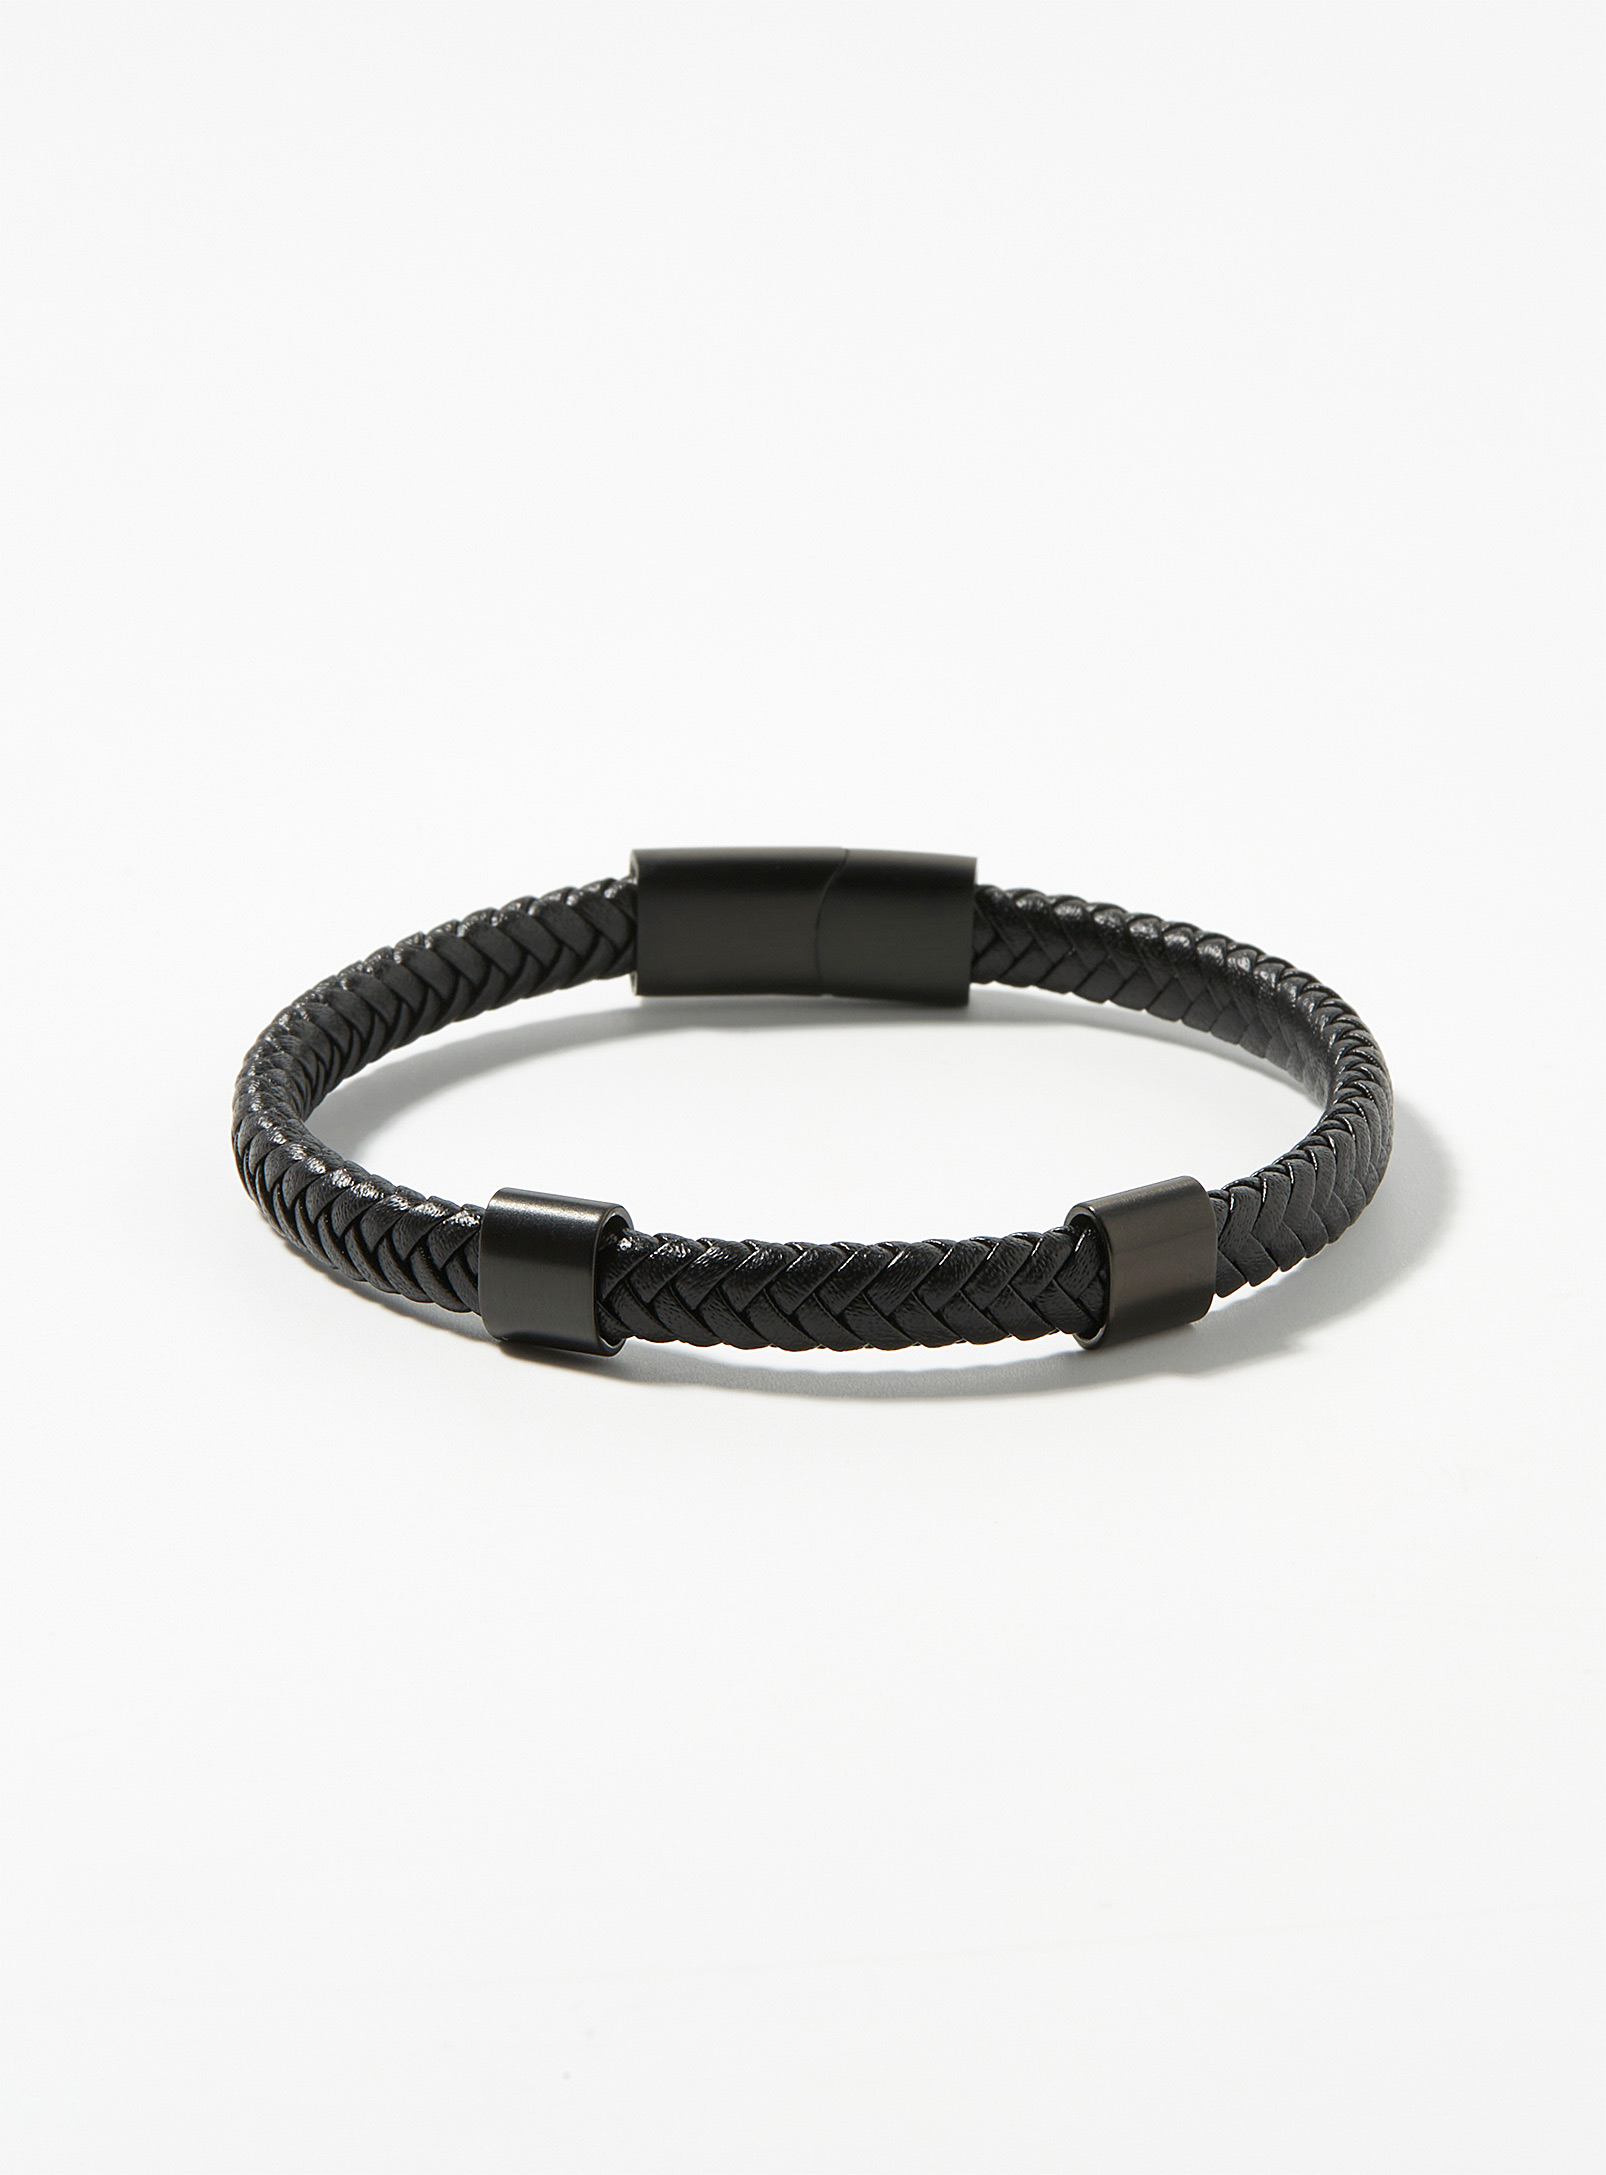 Le 31 - Le bracelet cuir tressé noir